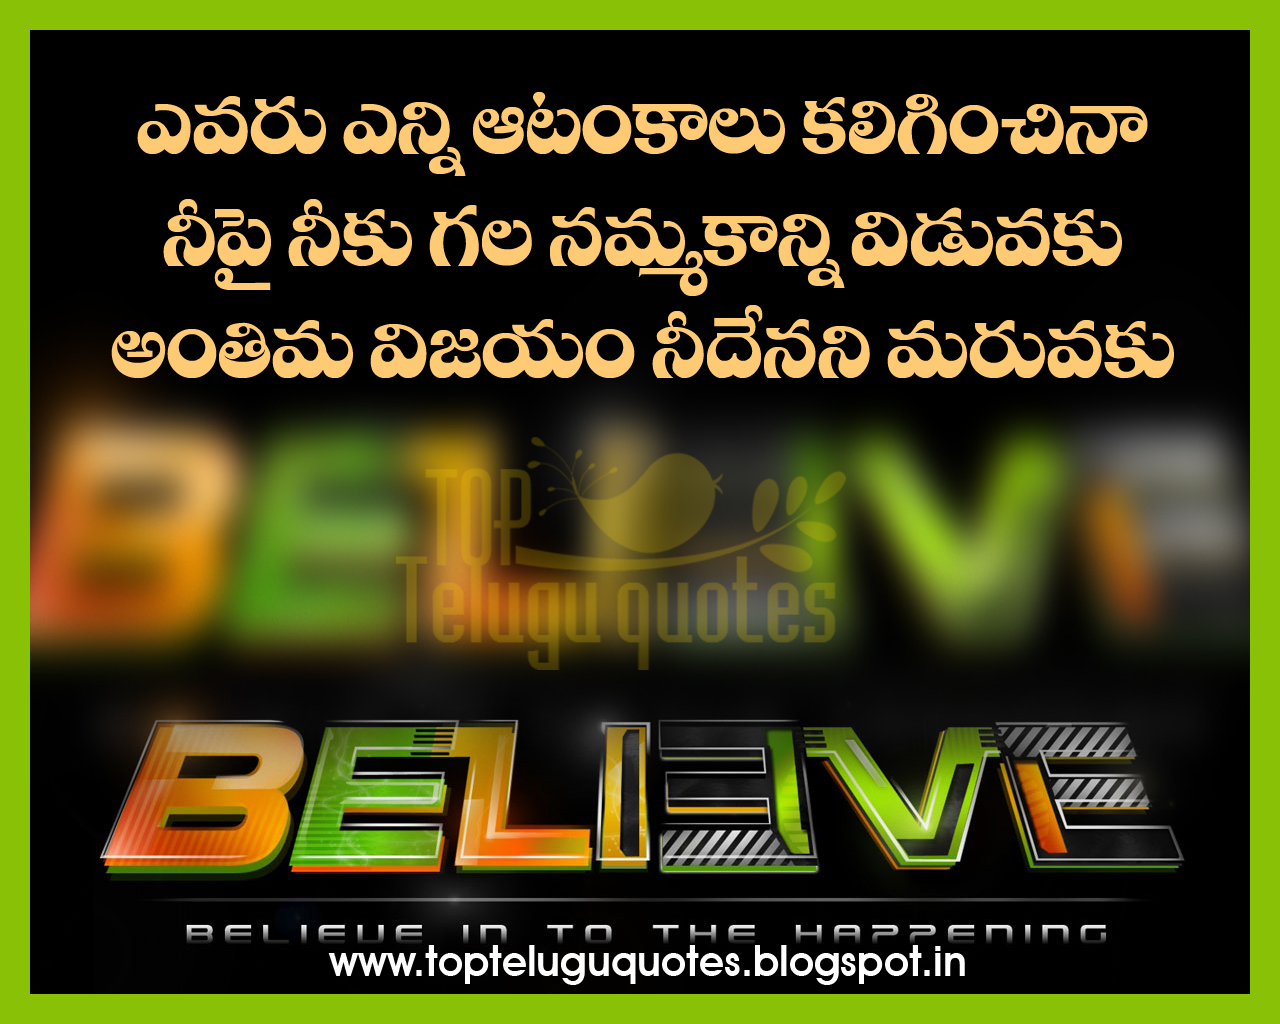 Top Telugu Quotes Einstein Motivation Life Quotes Images T